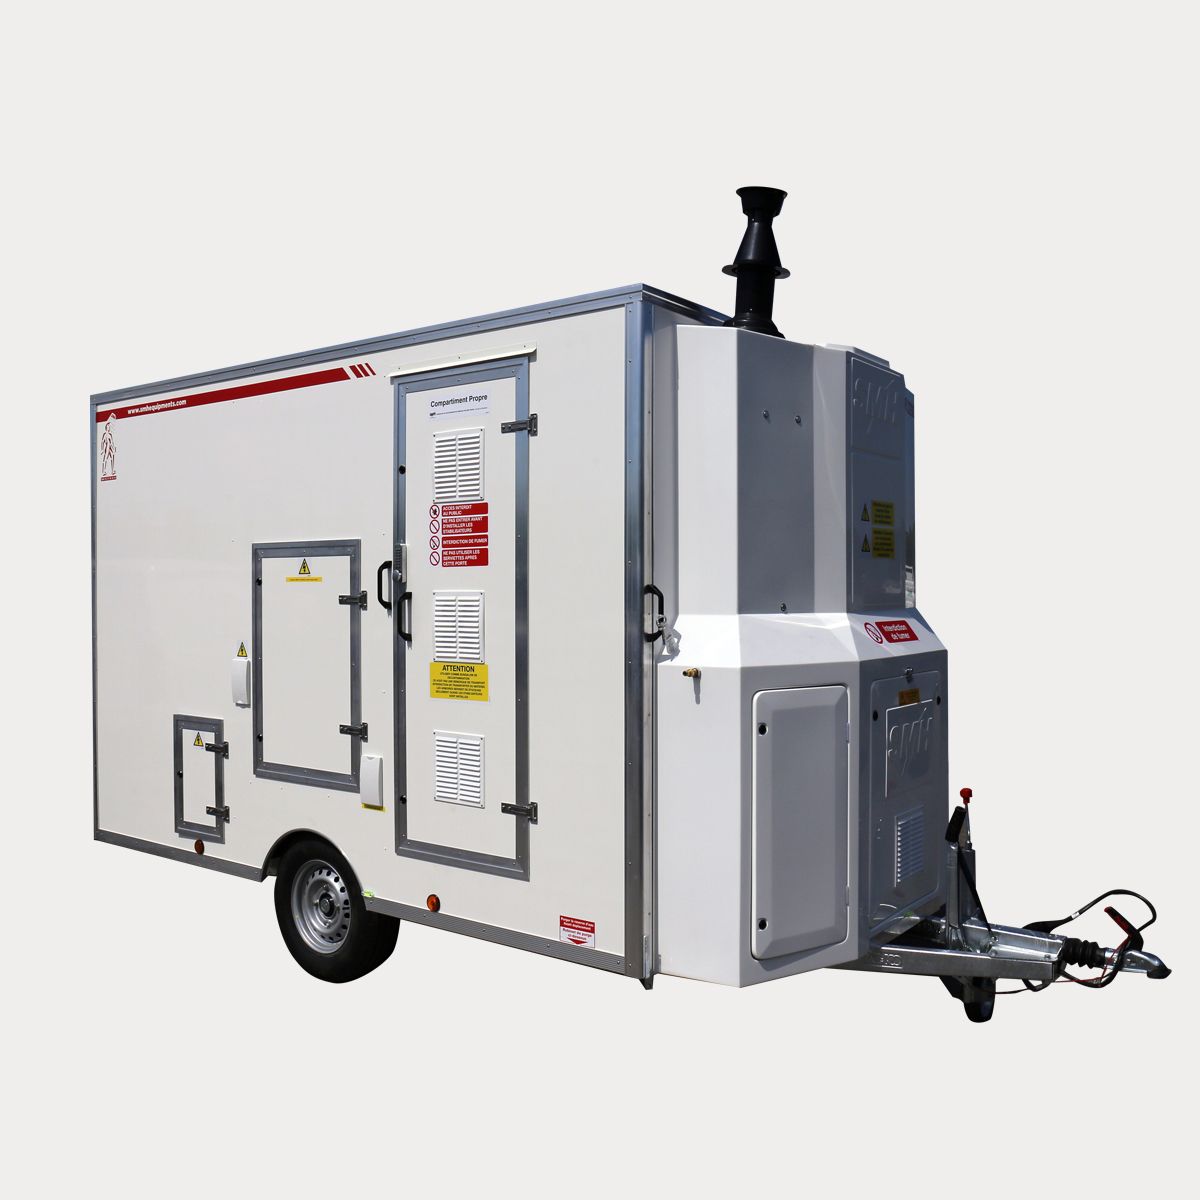 Unité de décontamination mobile compact et confortable pour les opérateurs en milieu pollué - Type 151_0